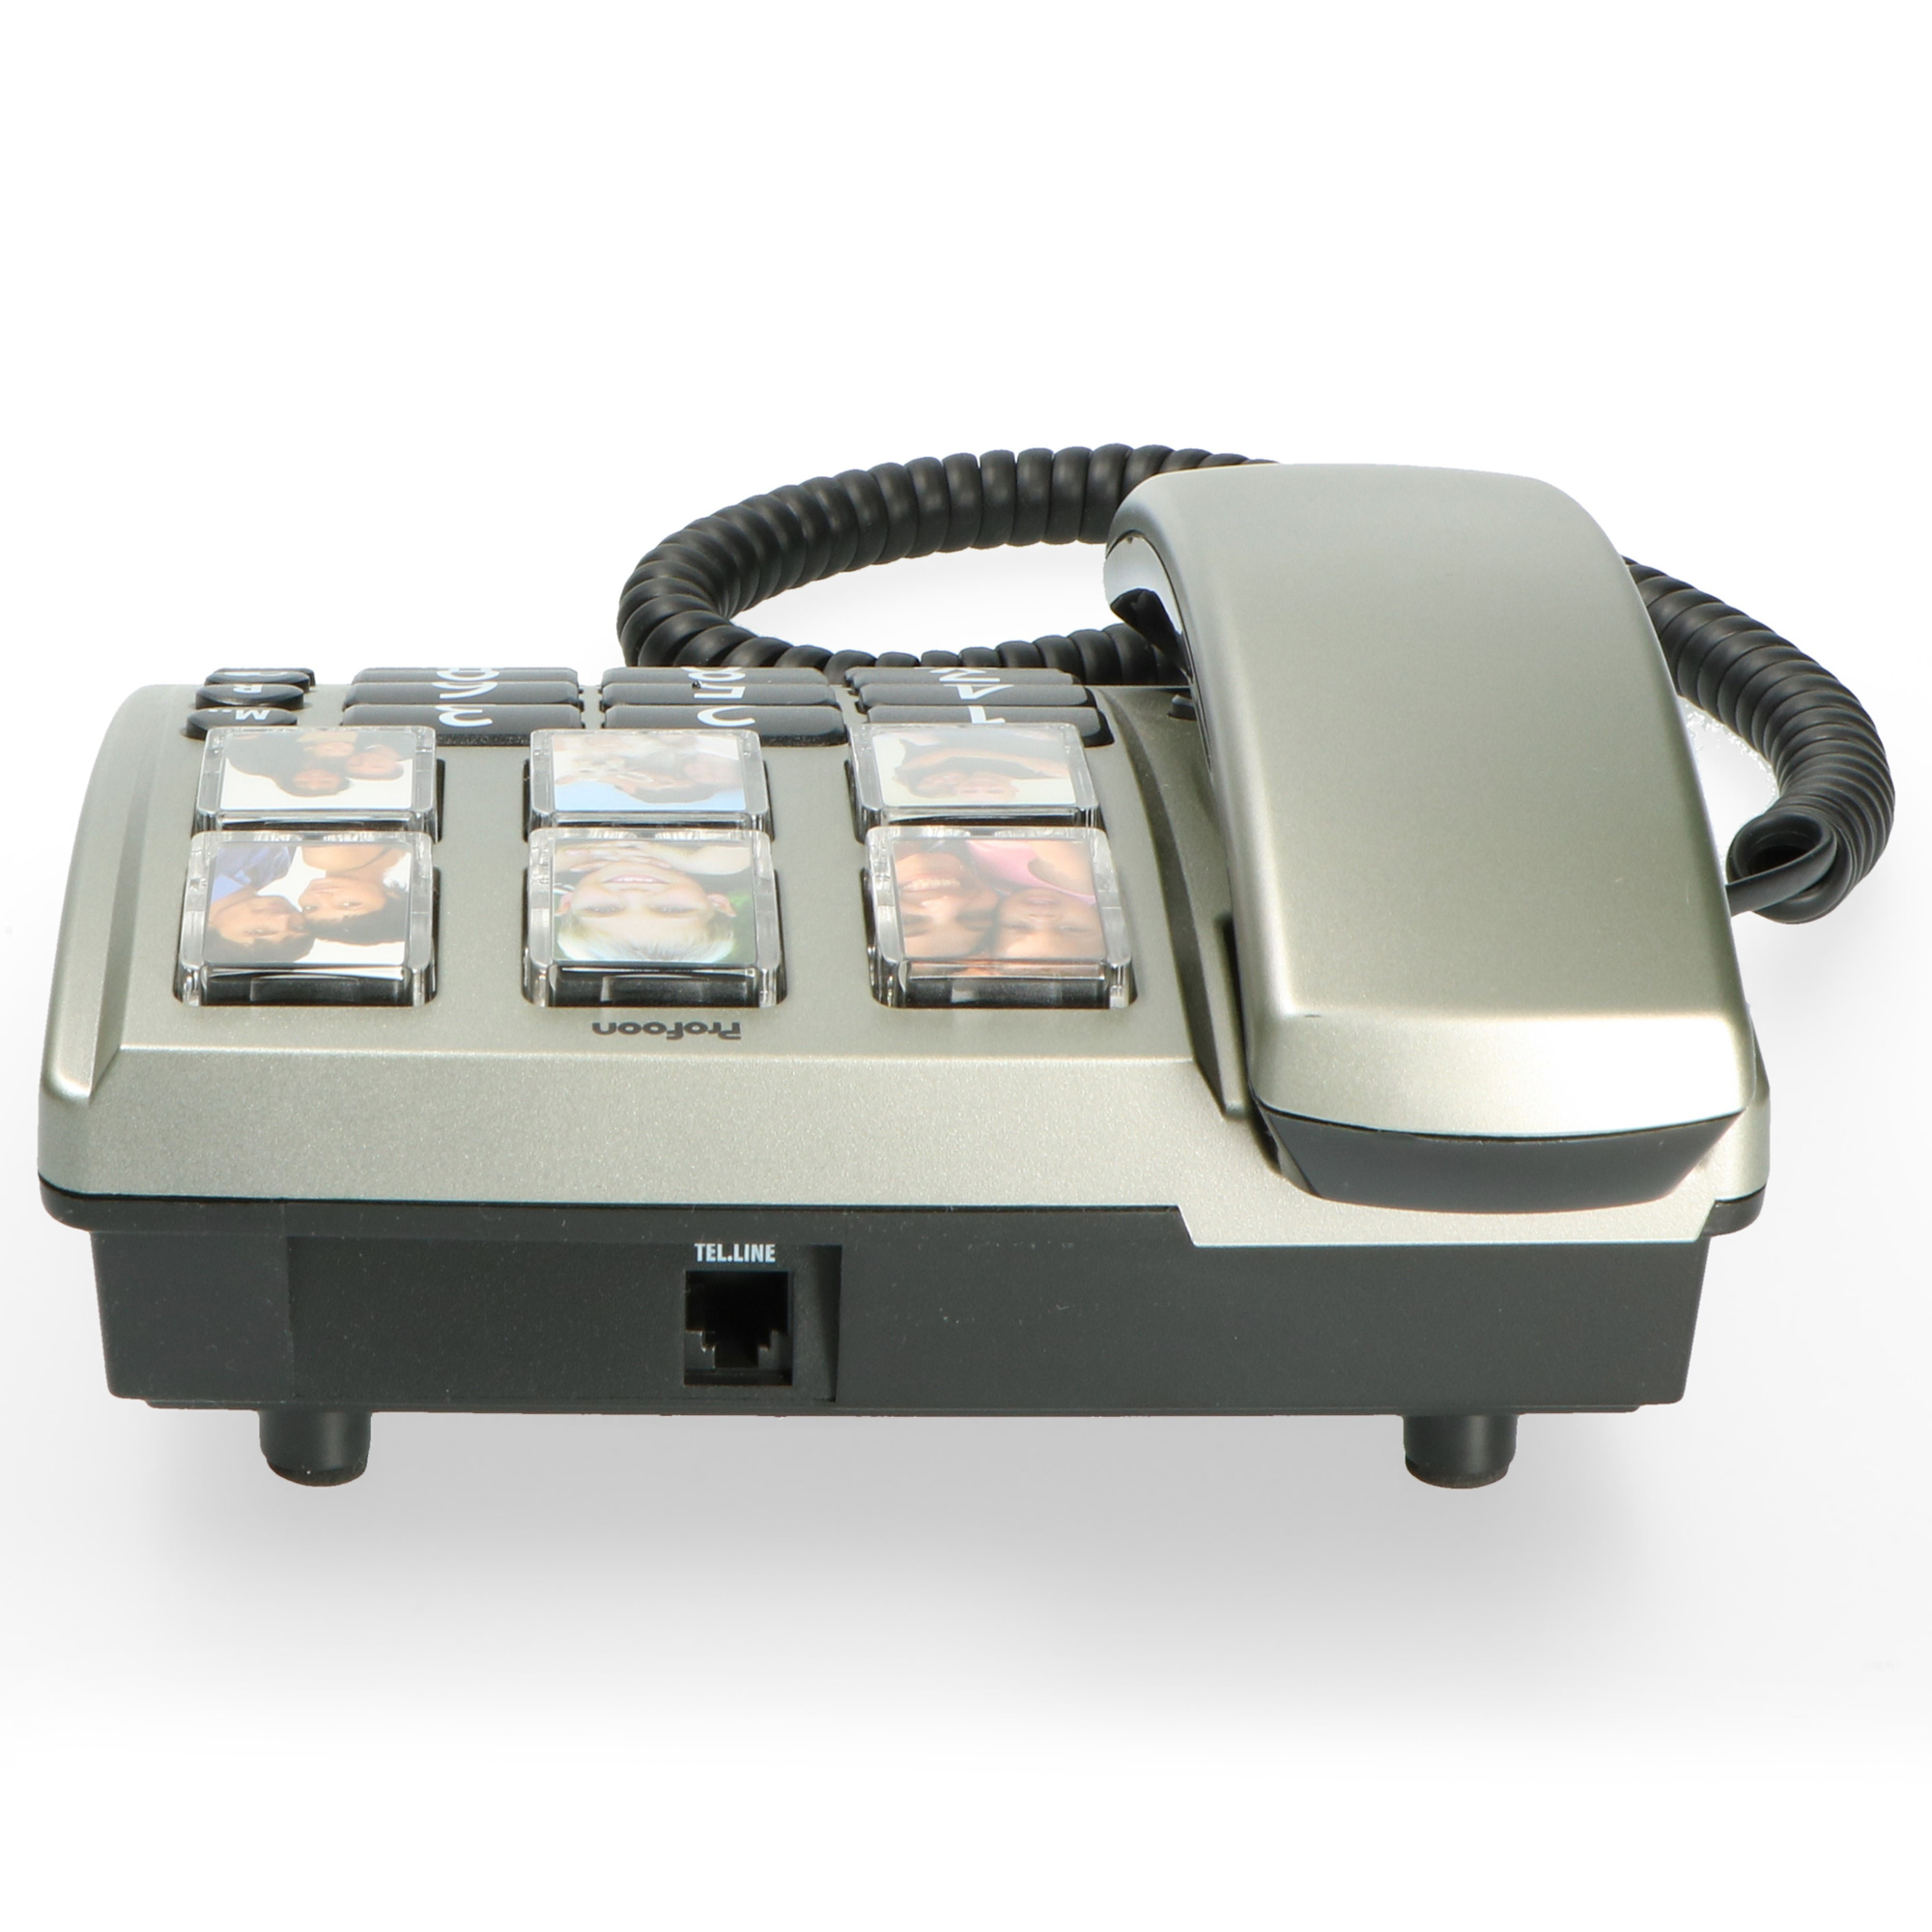 PROFOON TX-560 - Bürotelefon Fototasten schnurgebunden mit Zahlentasten und Tischtelefon - großen großen